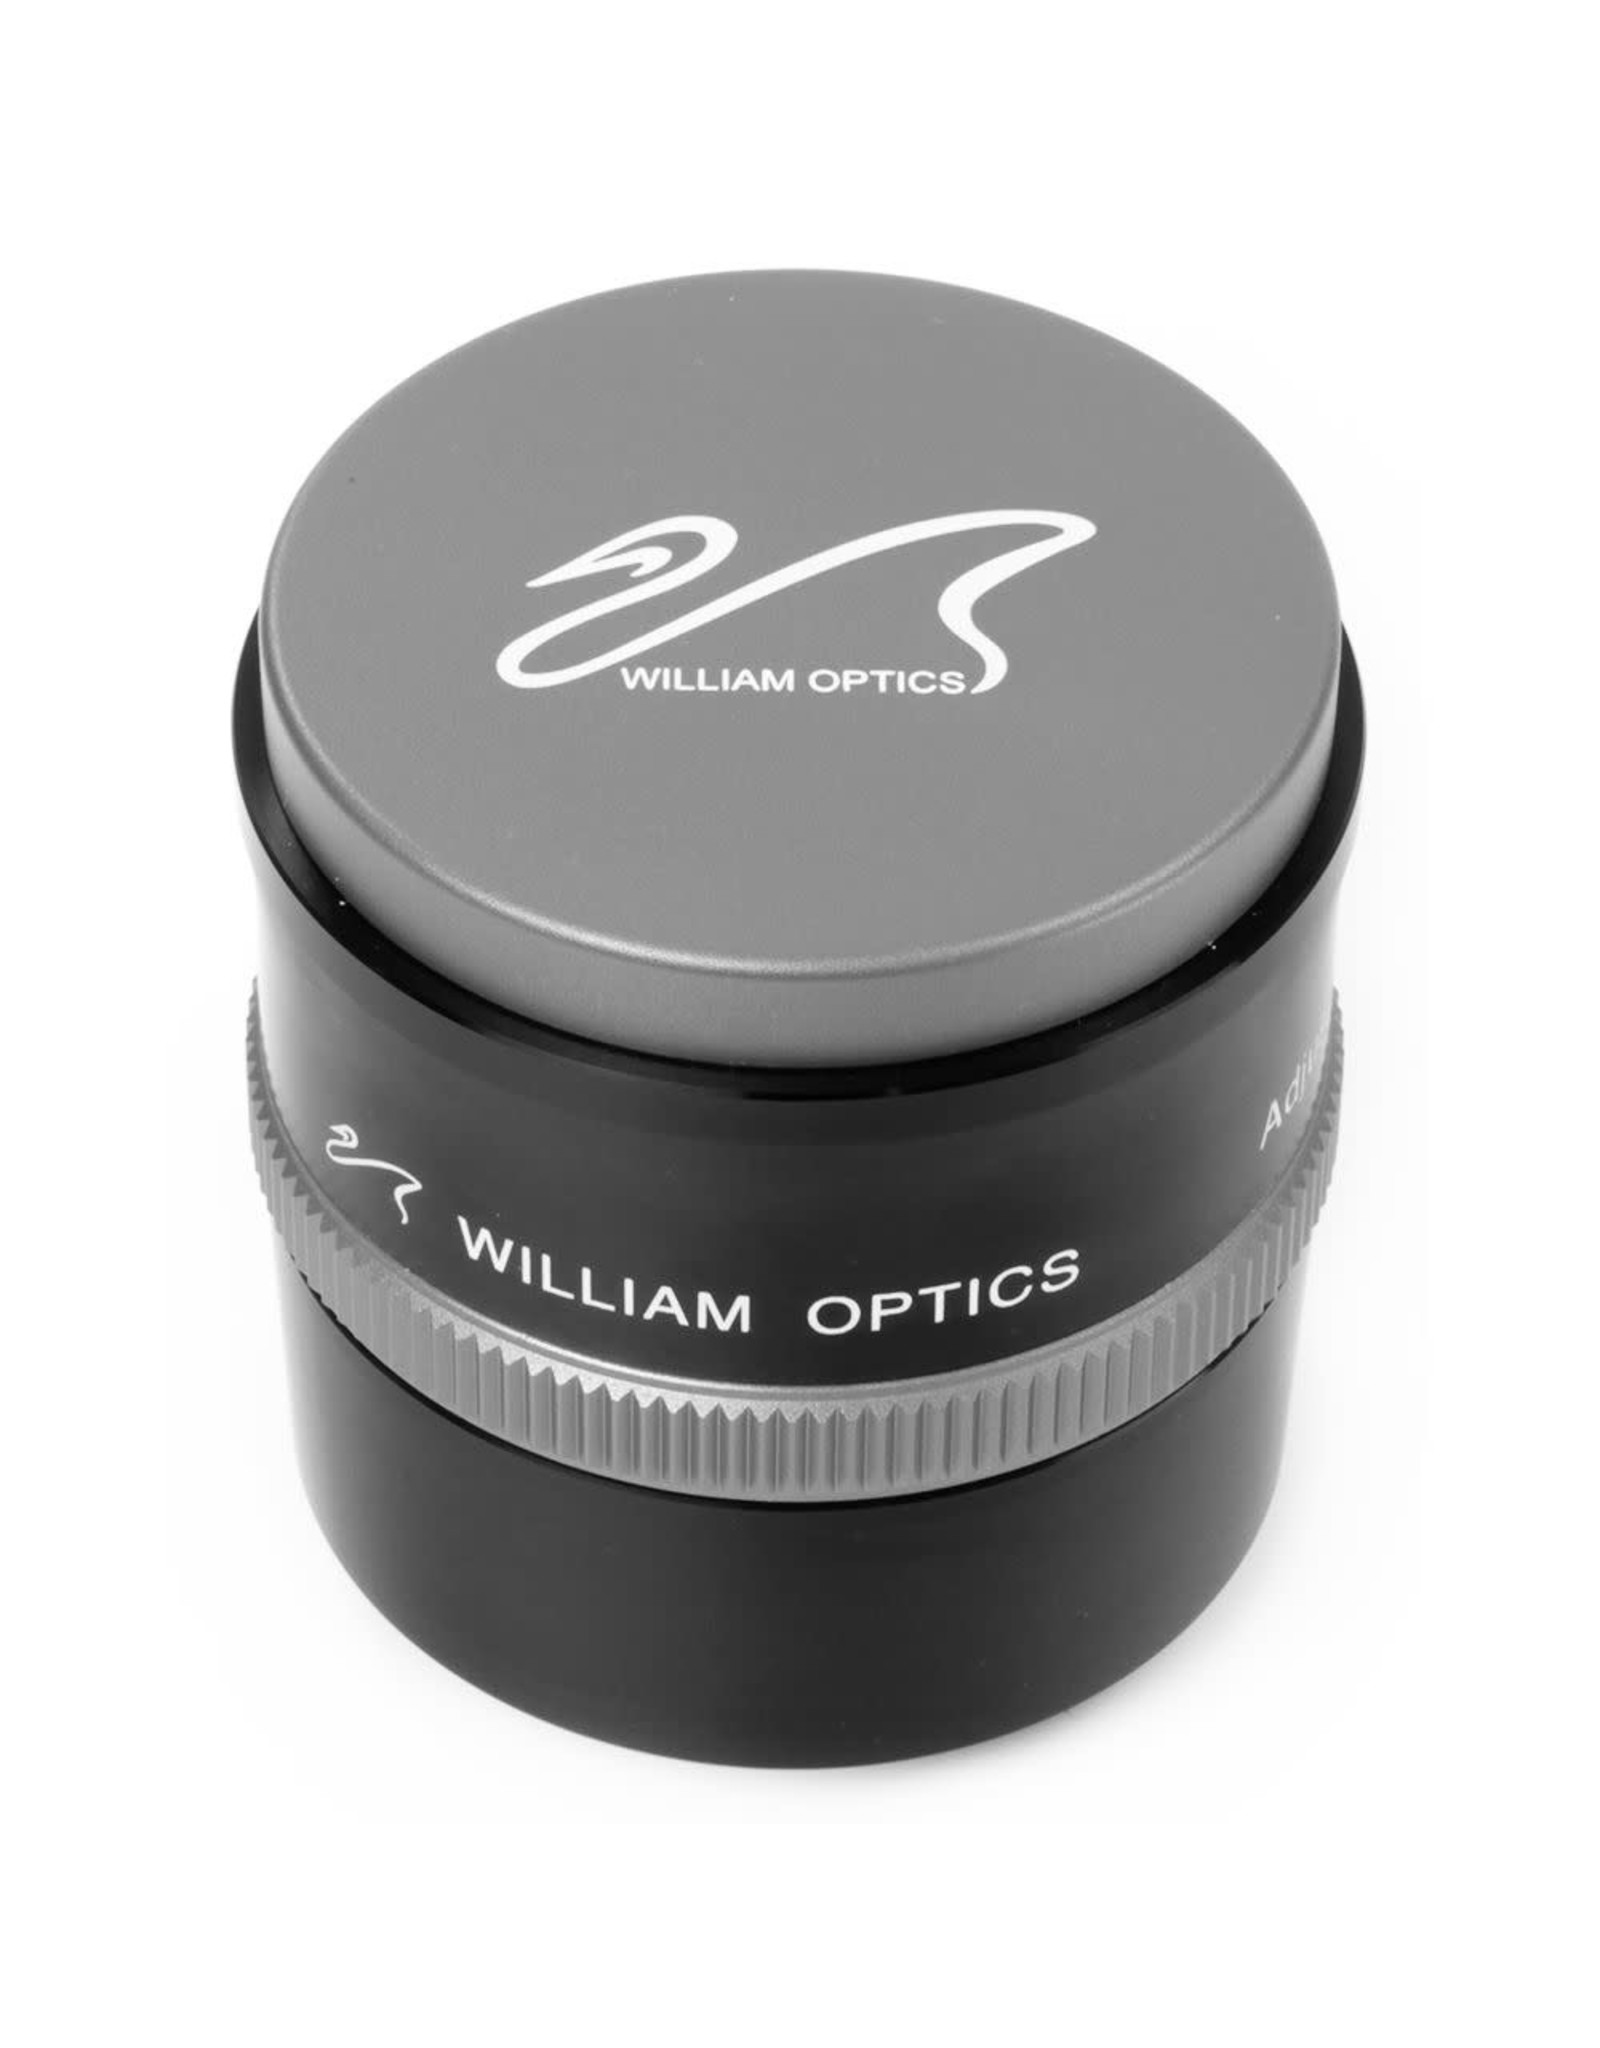 William Optics William Optics Gran Turismo 81 APO Refractor Kitw Internal Focus Design and 32mm UniGuide - Red